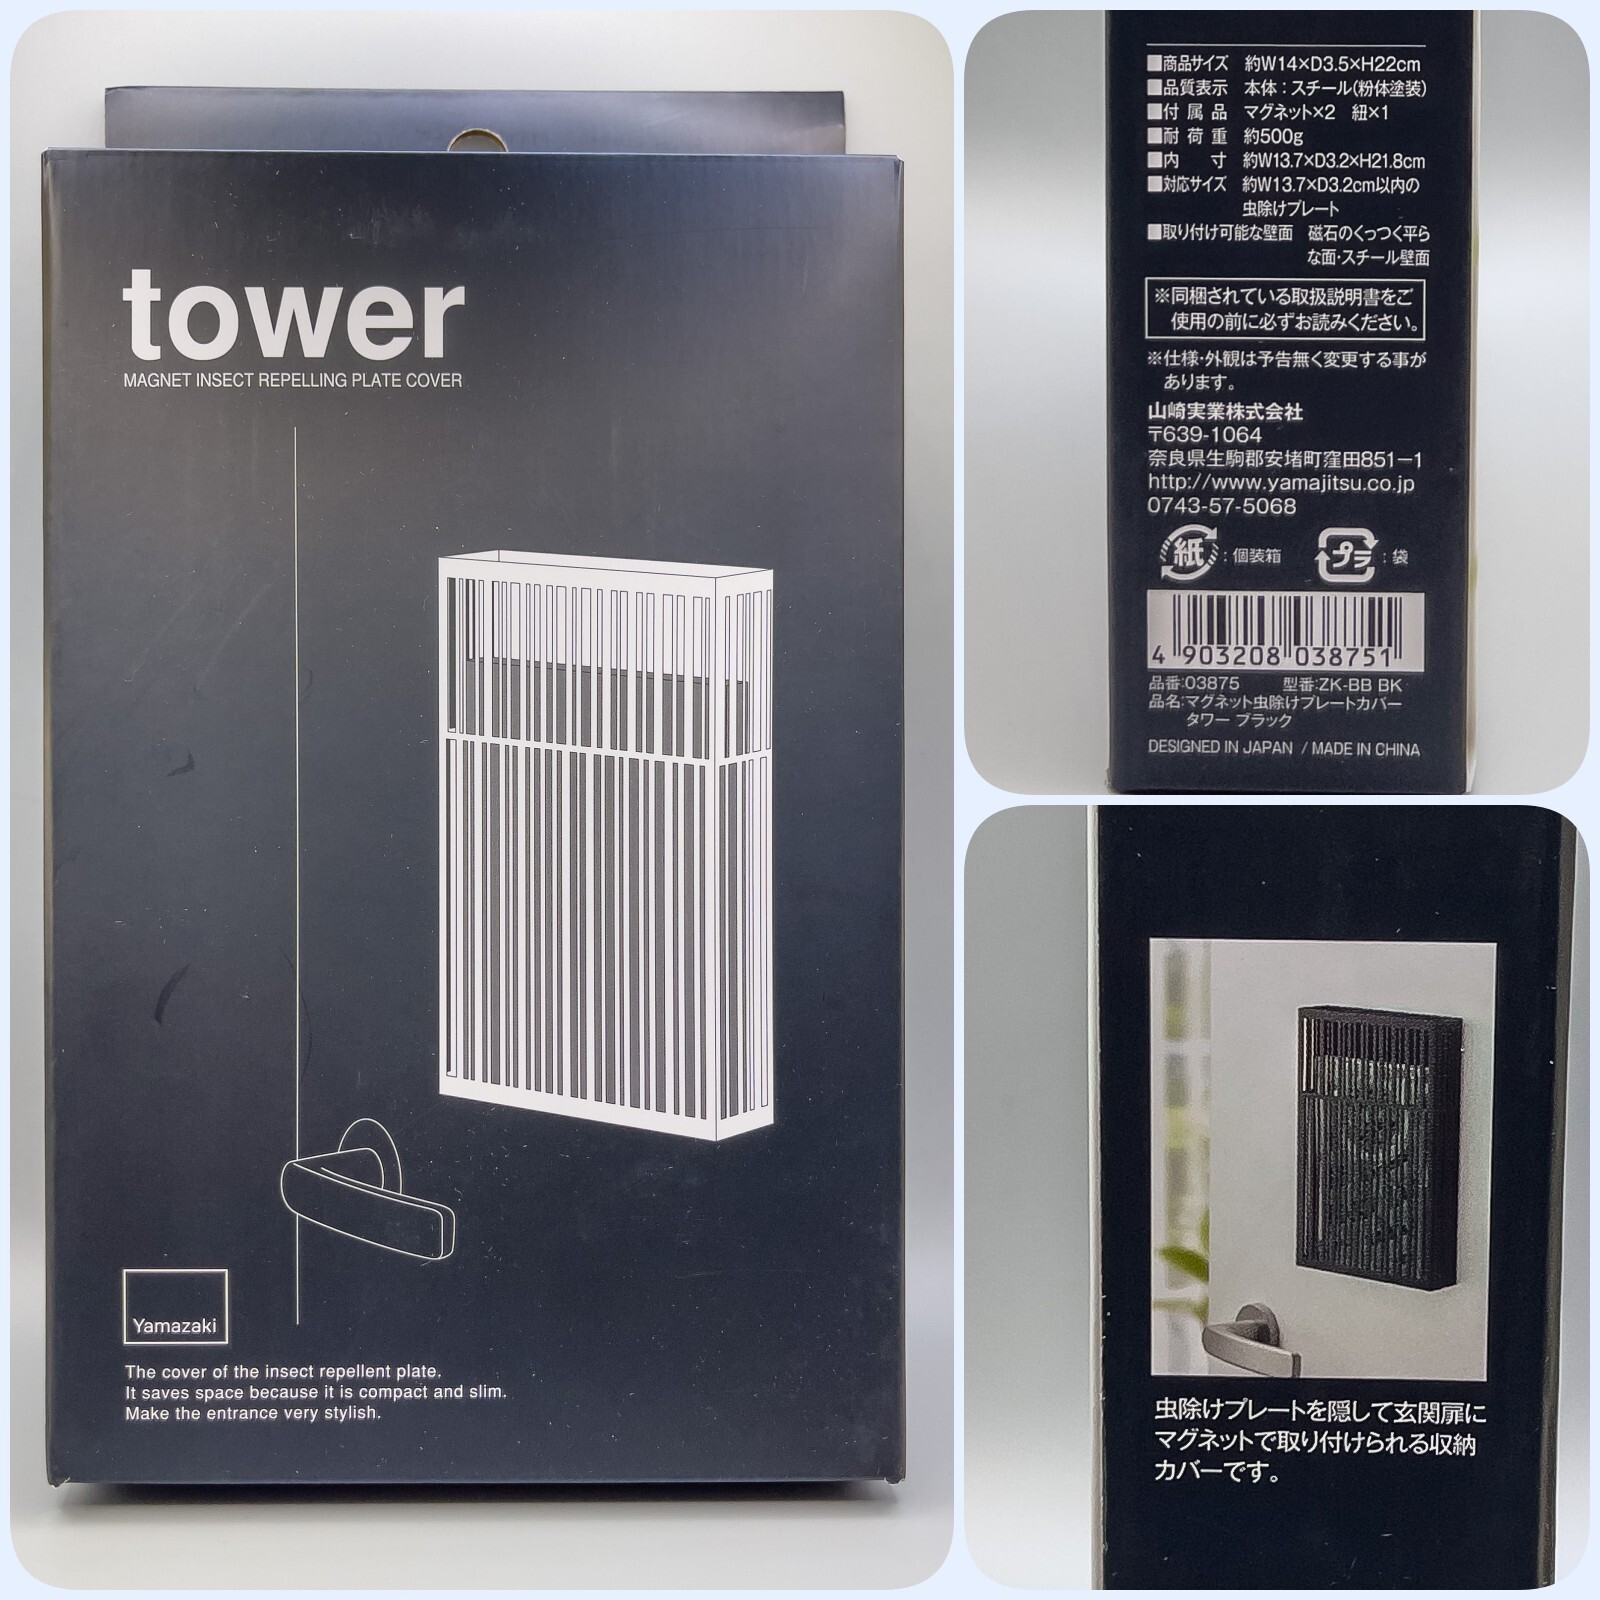 山崎実業 tower マグネット虫除けプレートカバー / マグネットで貼り付けられる虫除けプレートケース : 狐丸の「これ買ってみました」